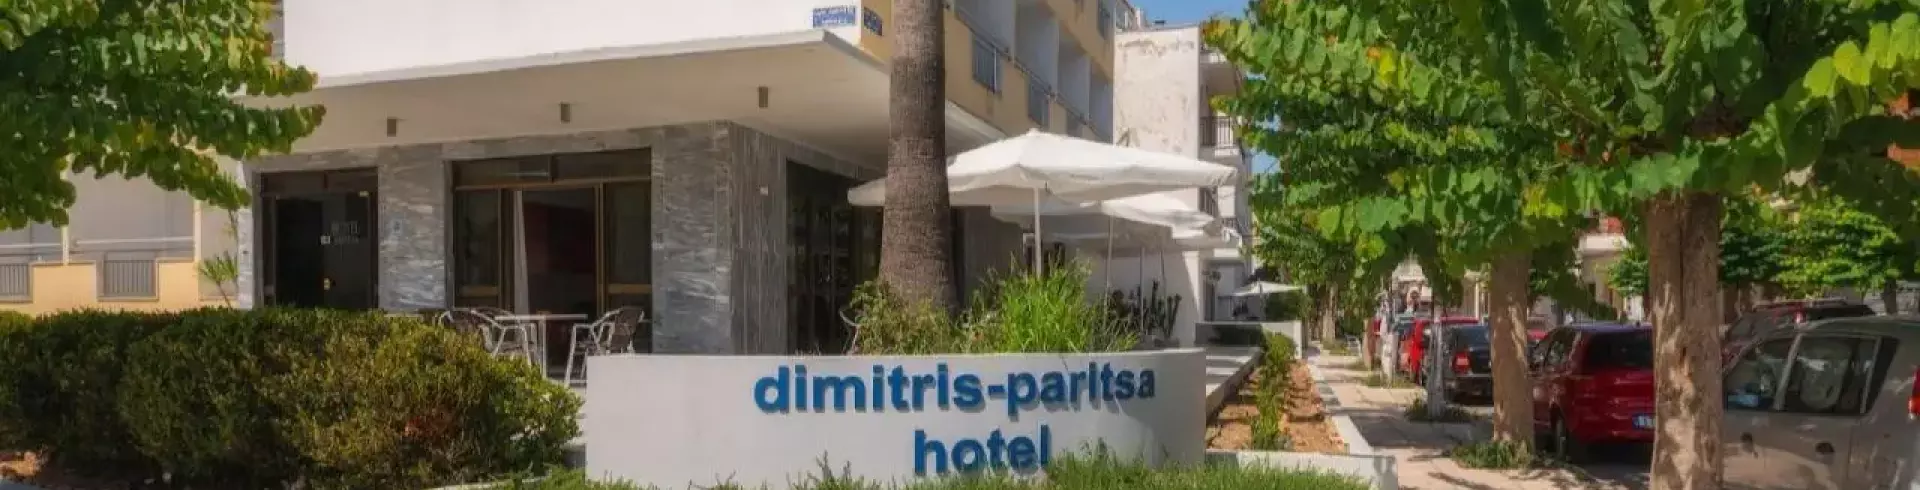 Dimitris Paritsa Hotel (Kos)